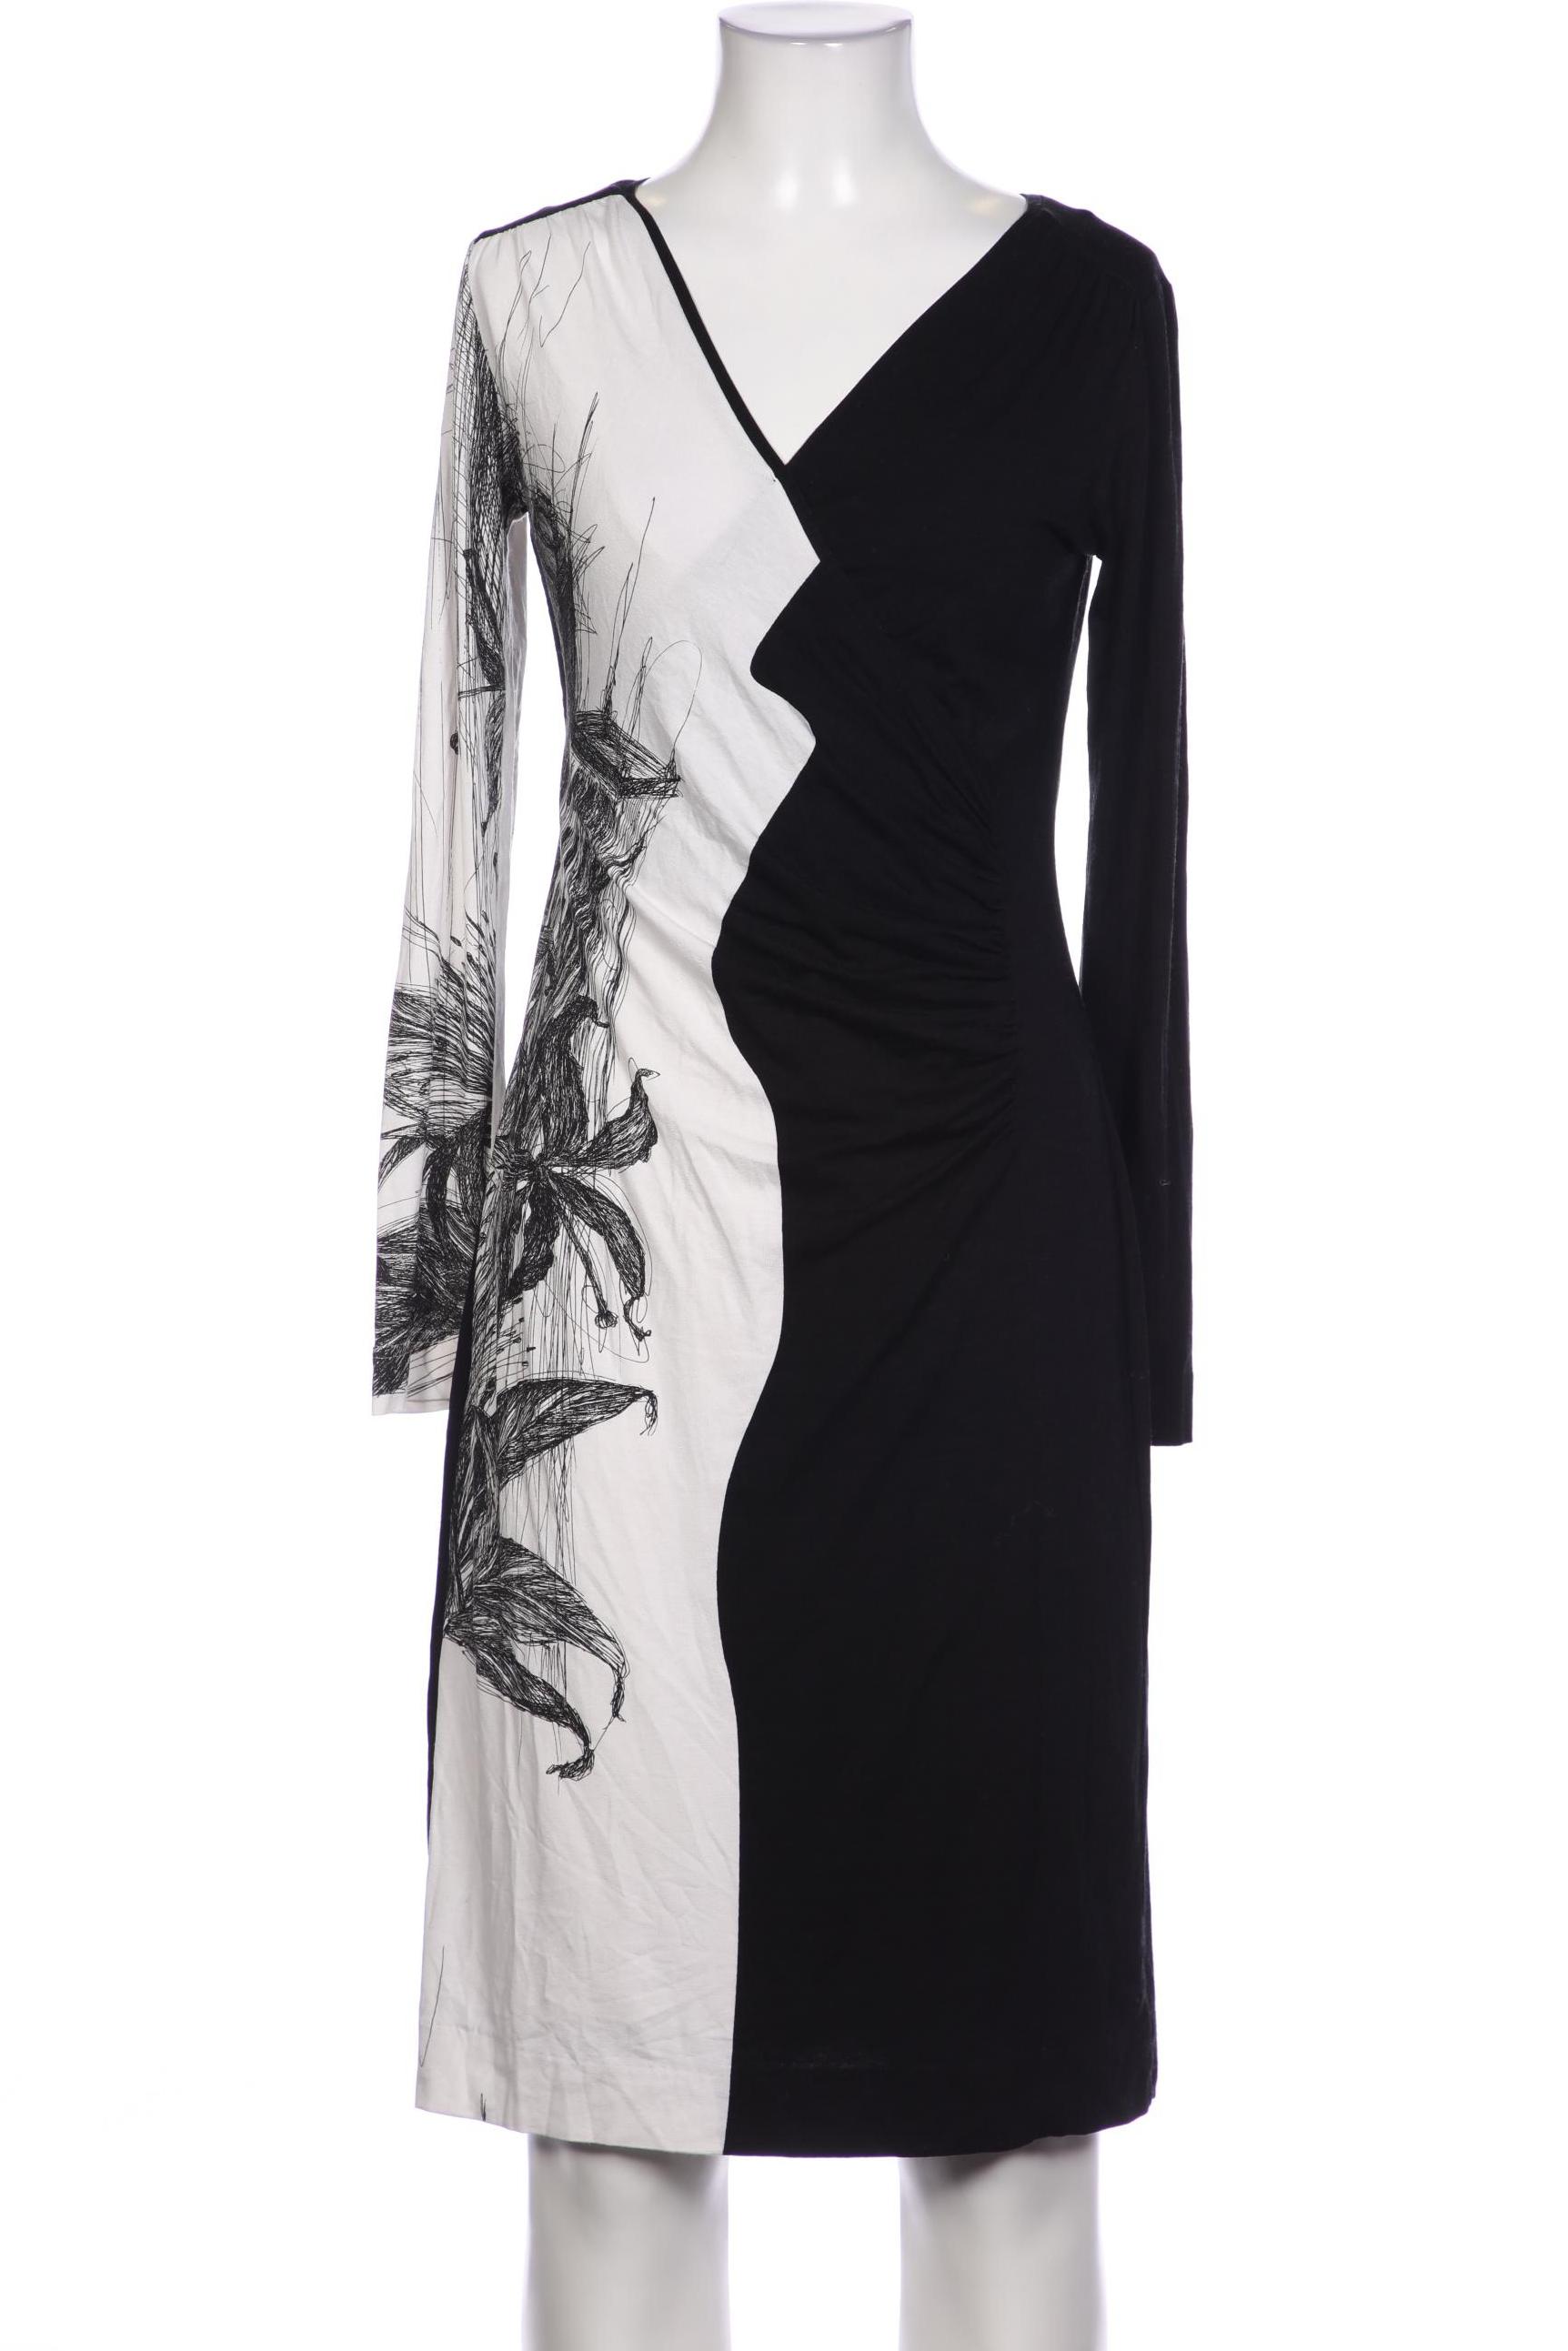 Ana Alcazar Damen Kleid, schwarz, Gr. 34 von Ana Alcazar